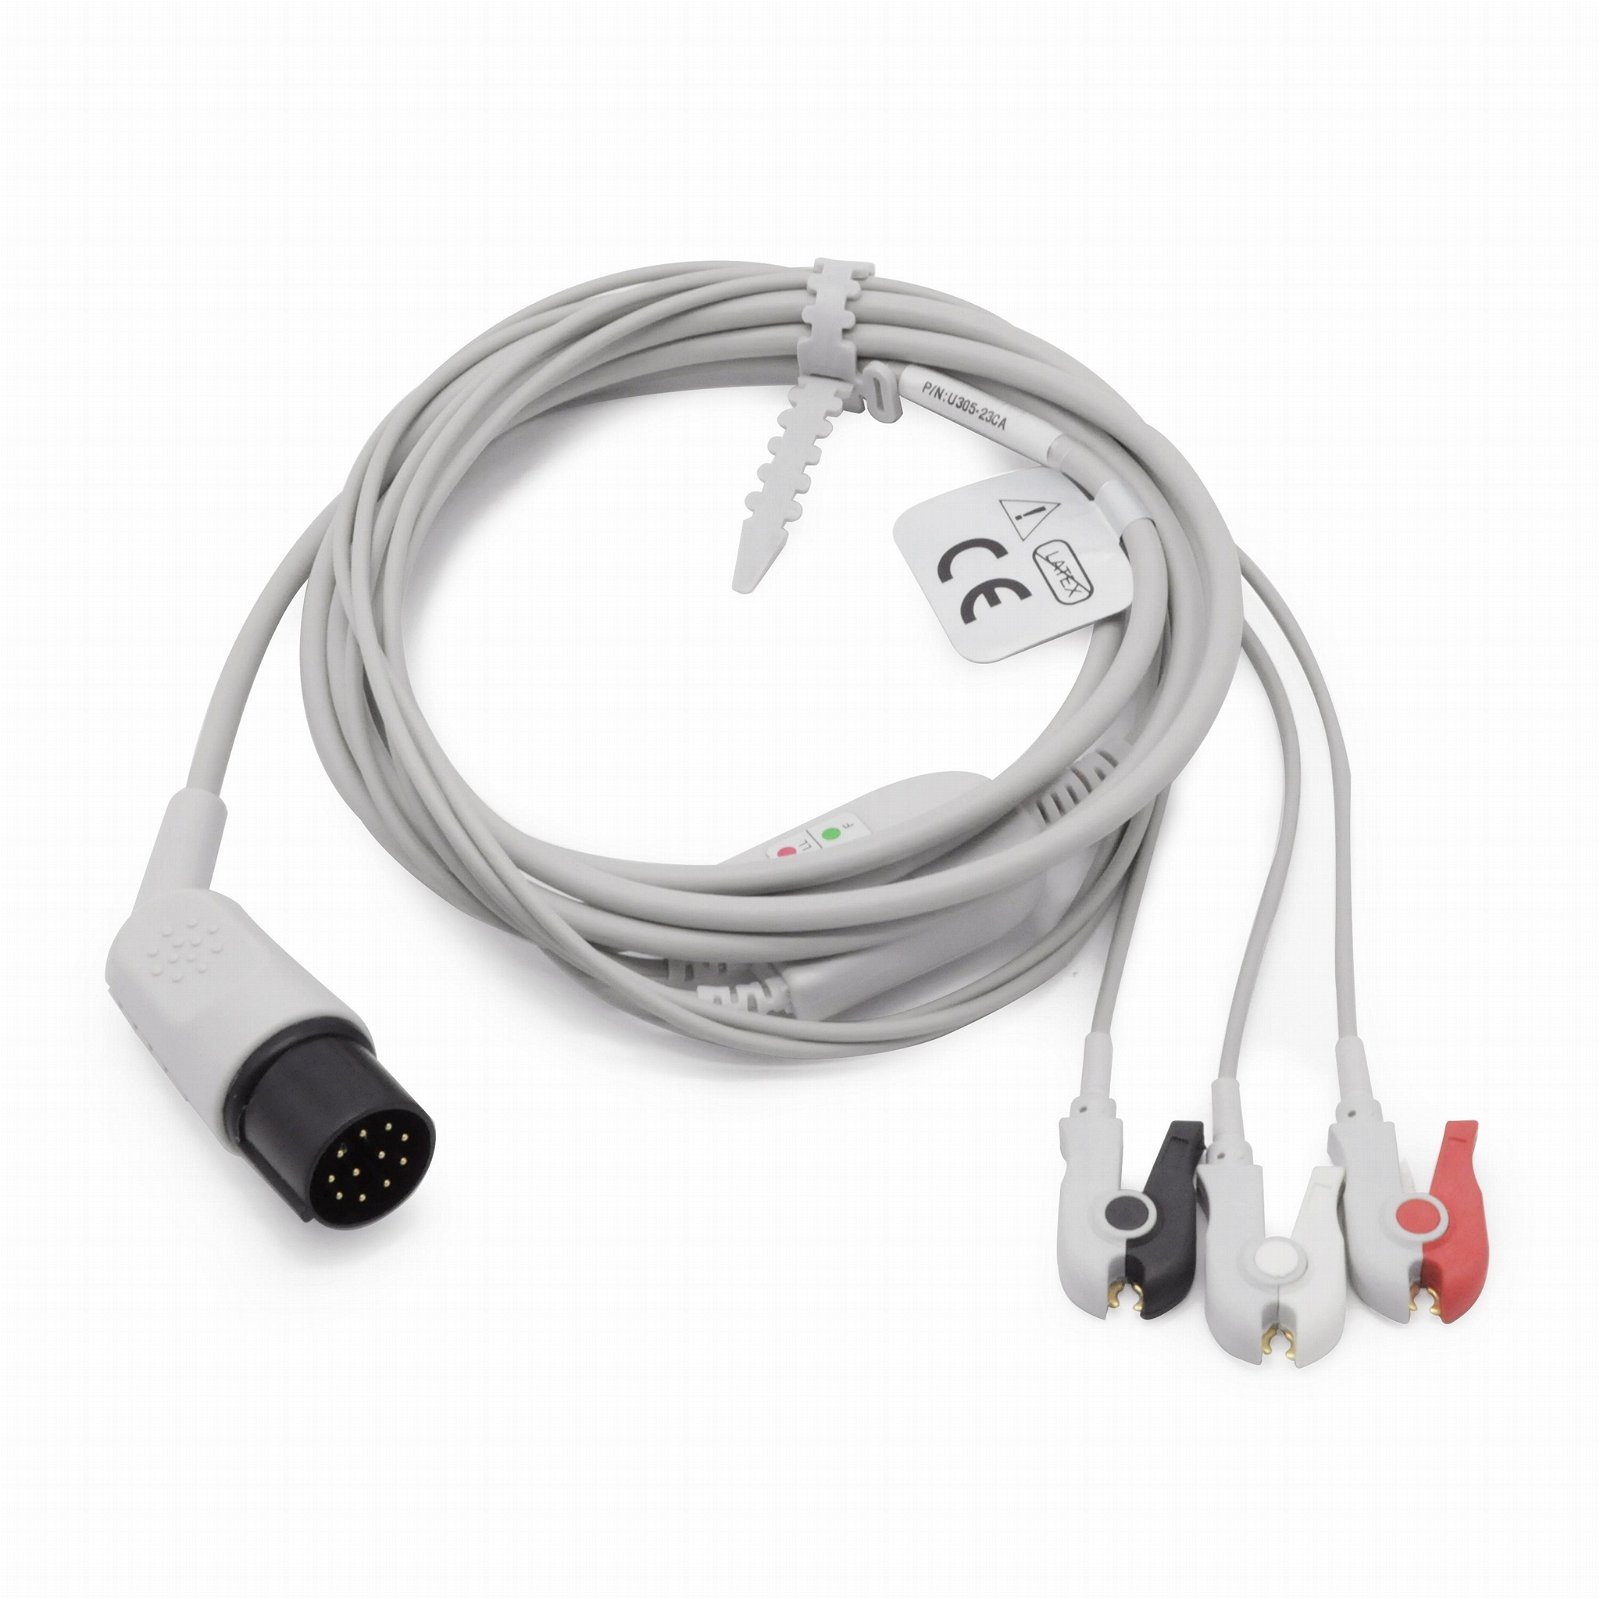 Nihon Kohden defibrillator TEC-5200A ECG cable with lead wires,11 pins  2